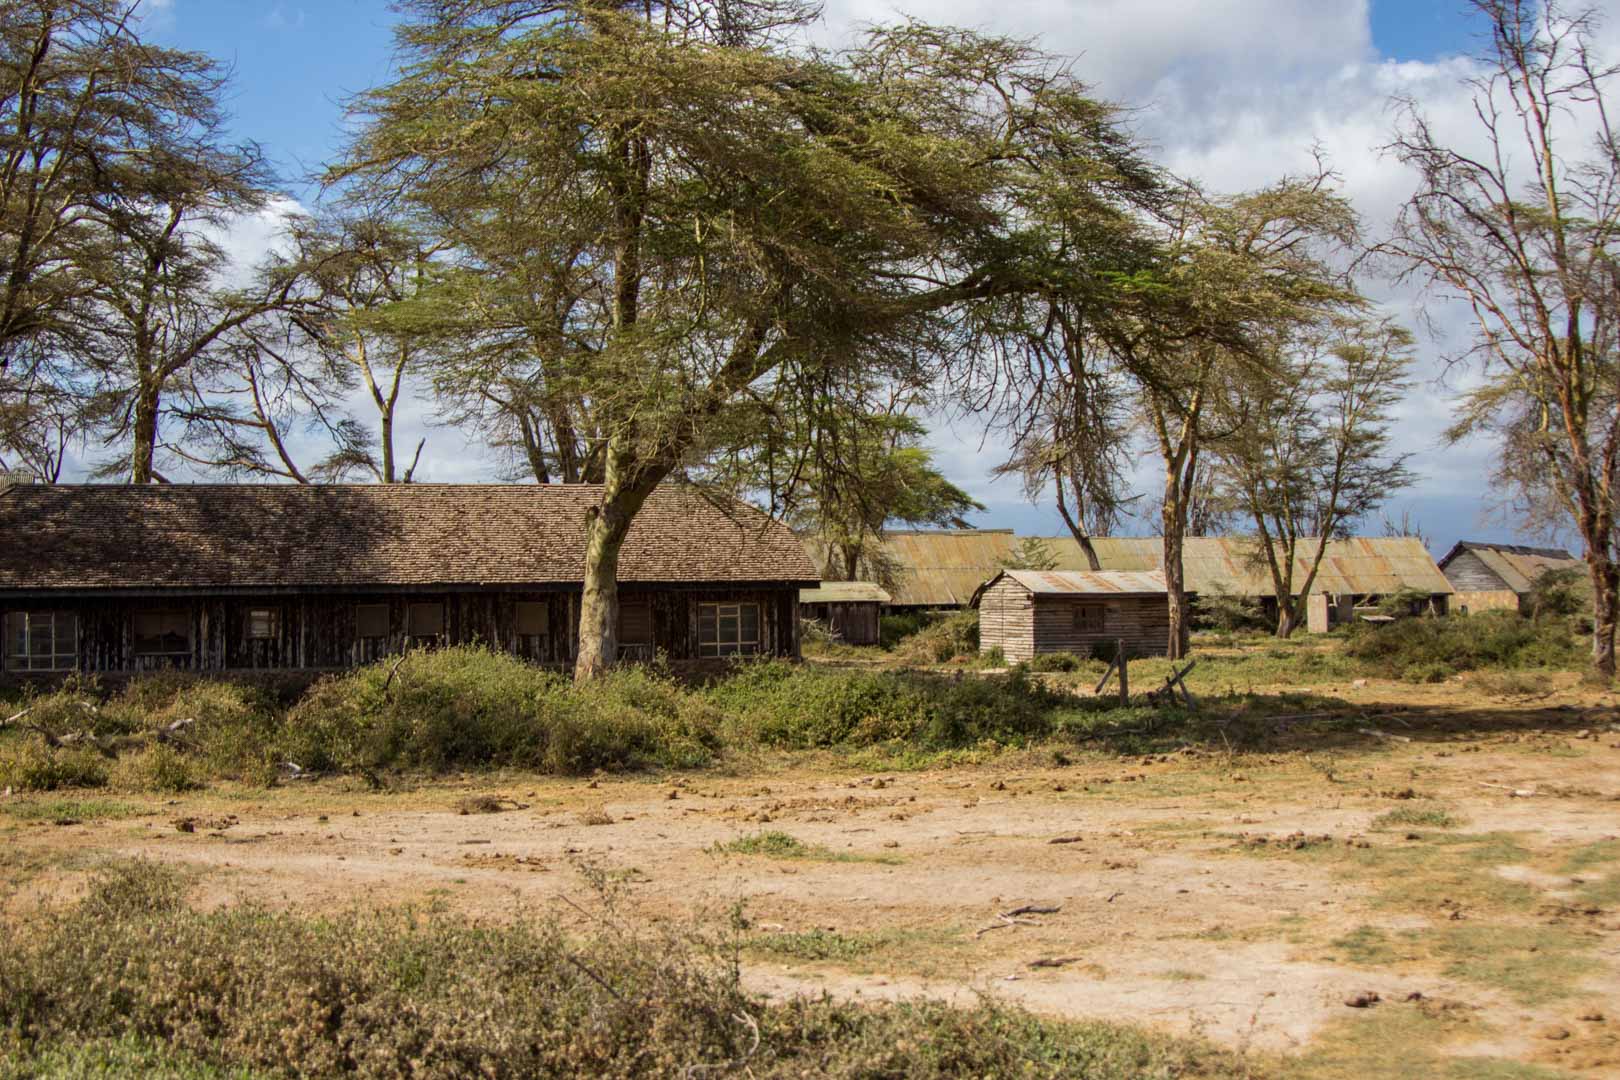 Hotel abandonado en Amboseli, Kenia